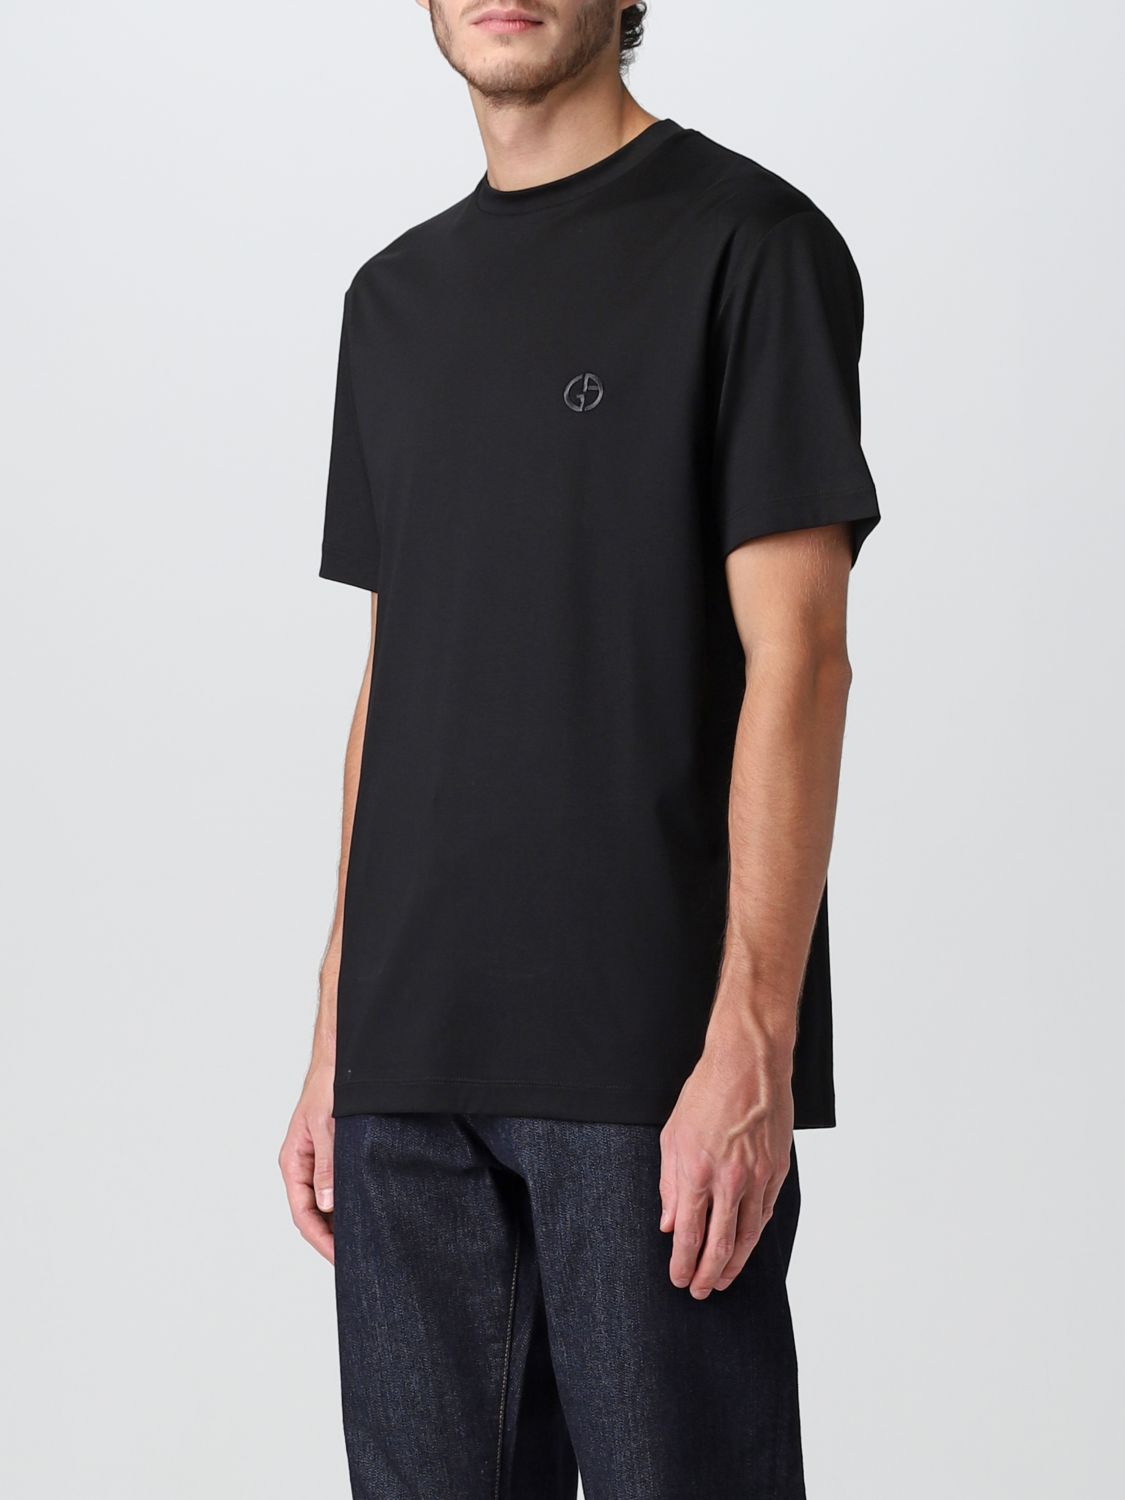 Tシャツ ジョルジオ アルマーニ: Tシャツ Giorgio Armani メンズ ブラック 4